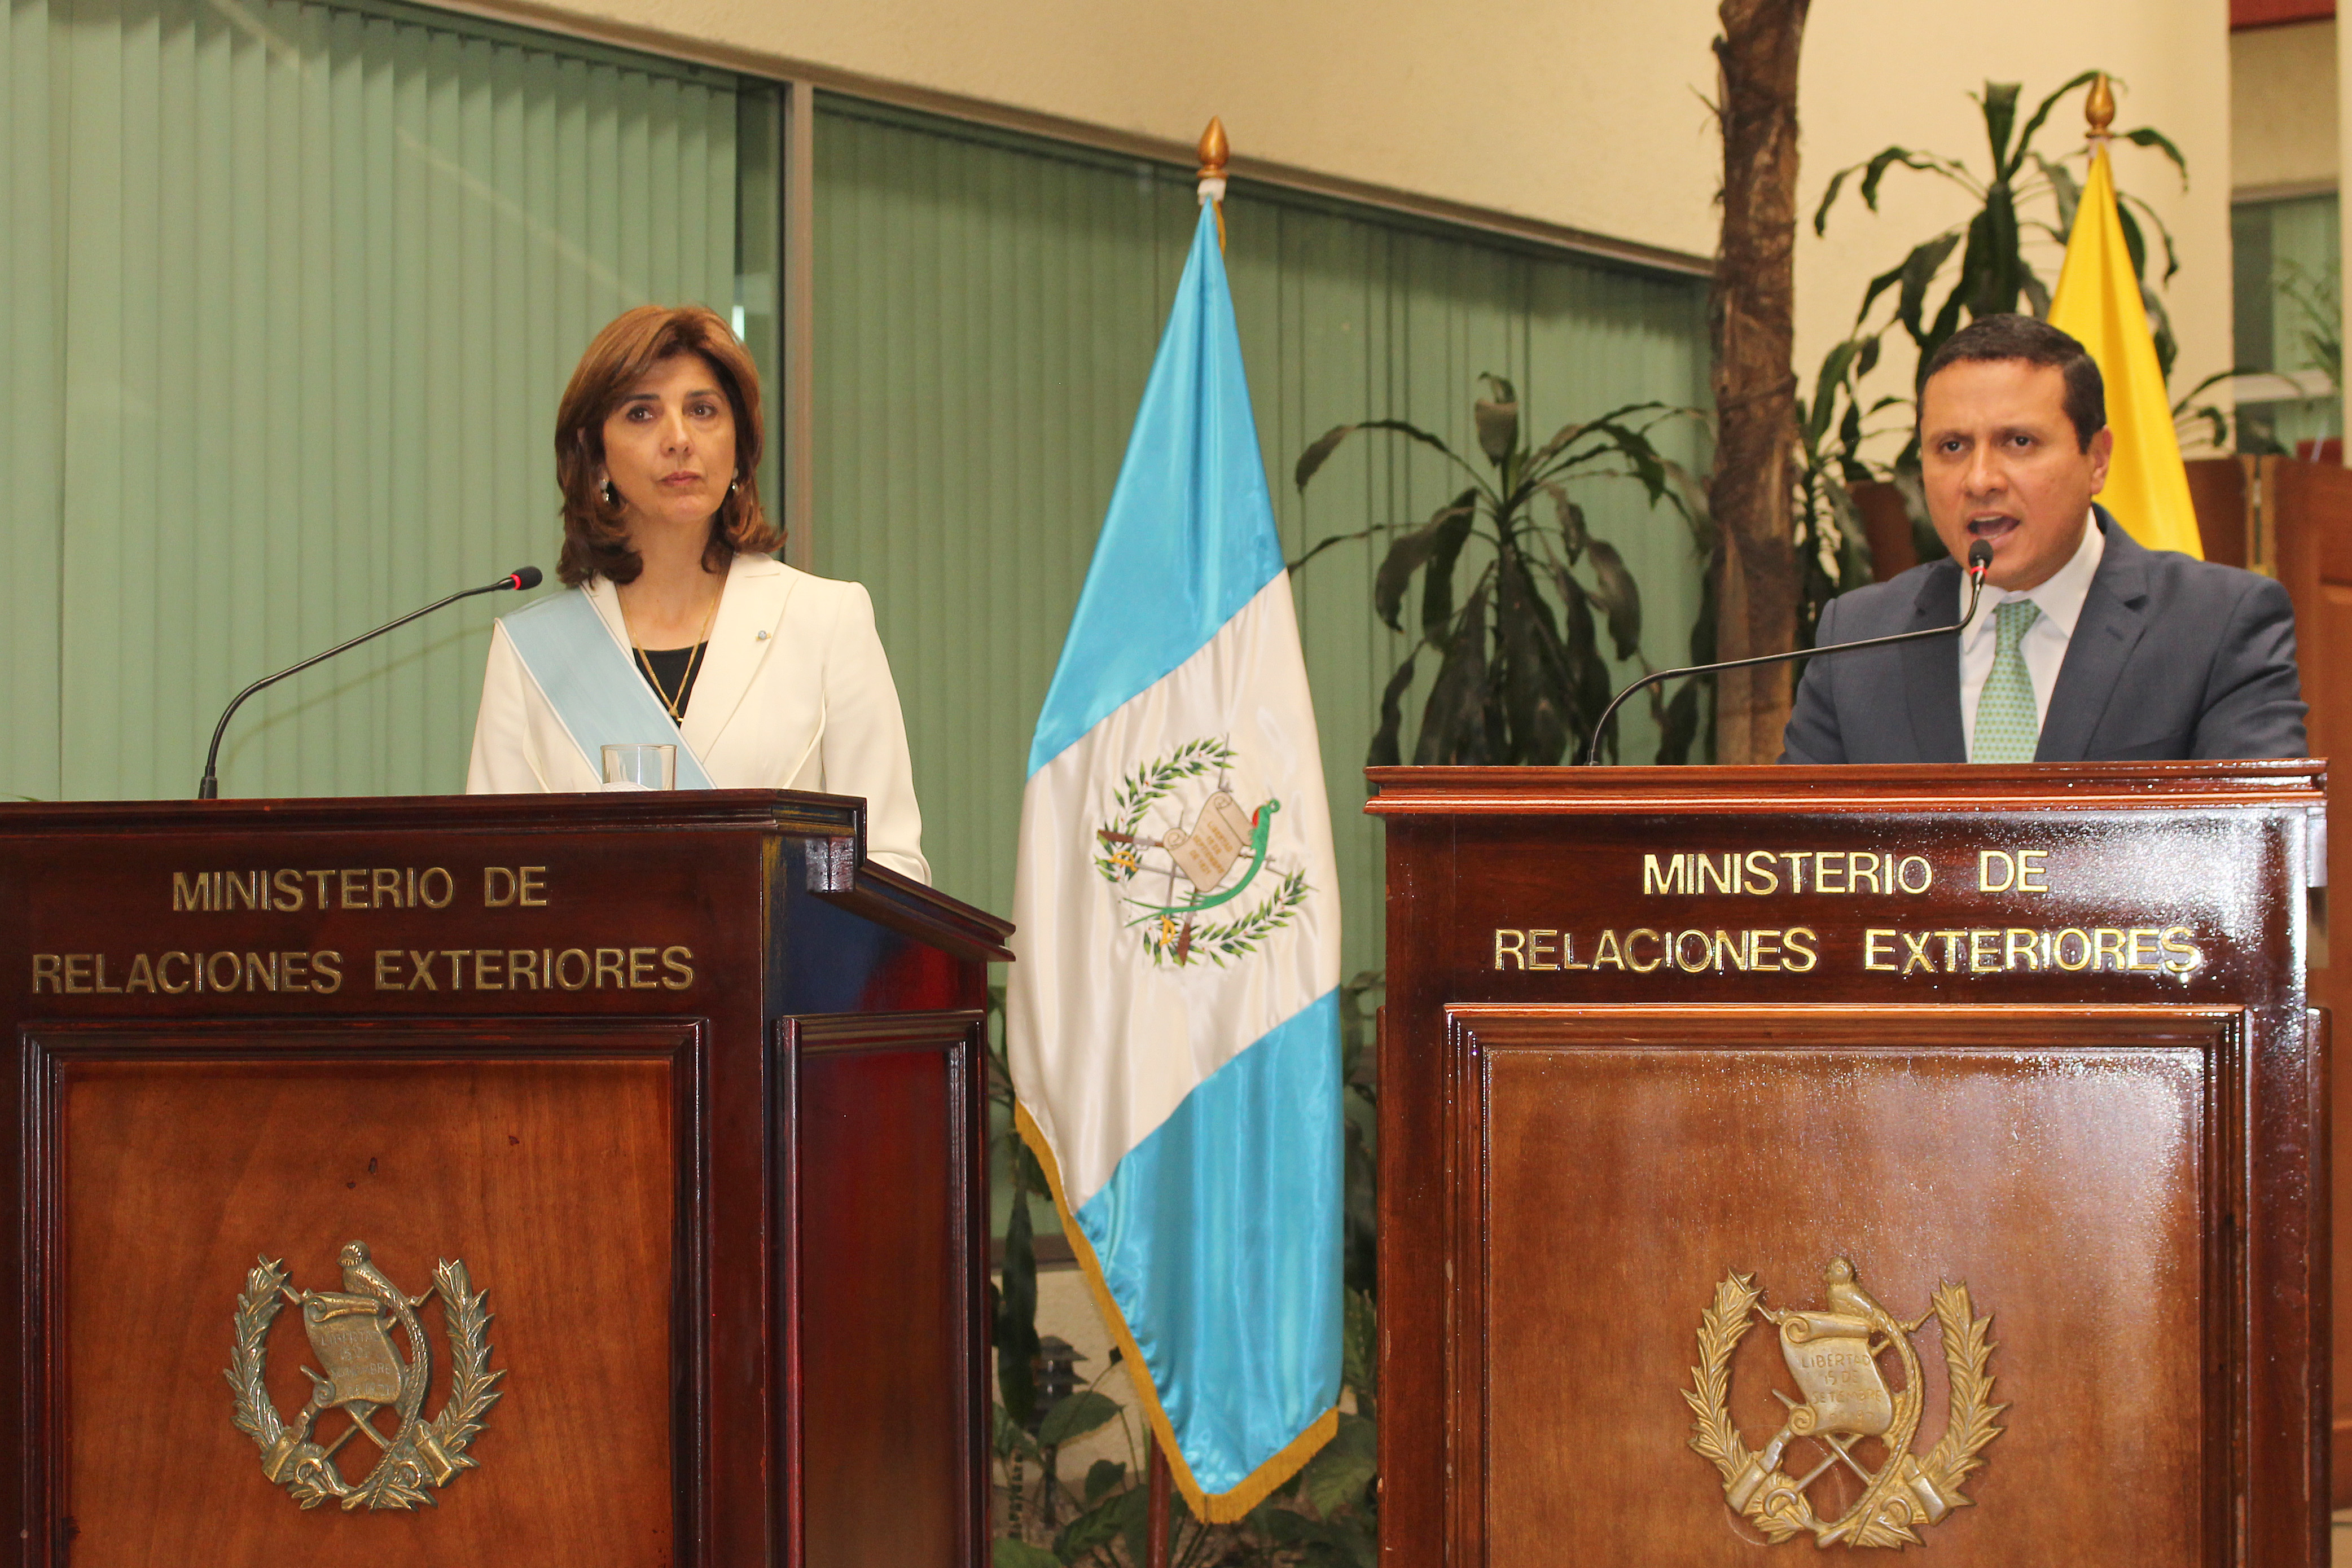 La Ministra de Relaciones Exteriores, María Ángela Holguín, aseguró que Colombia quiere apoyar al Gobierno de Guatemala en el desarrollo de proyectos que permitan “mejorar la calidad de la población” y destacó que “estamos identificando proyectos para trabajar en los próximos meses”.